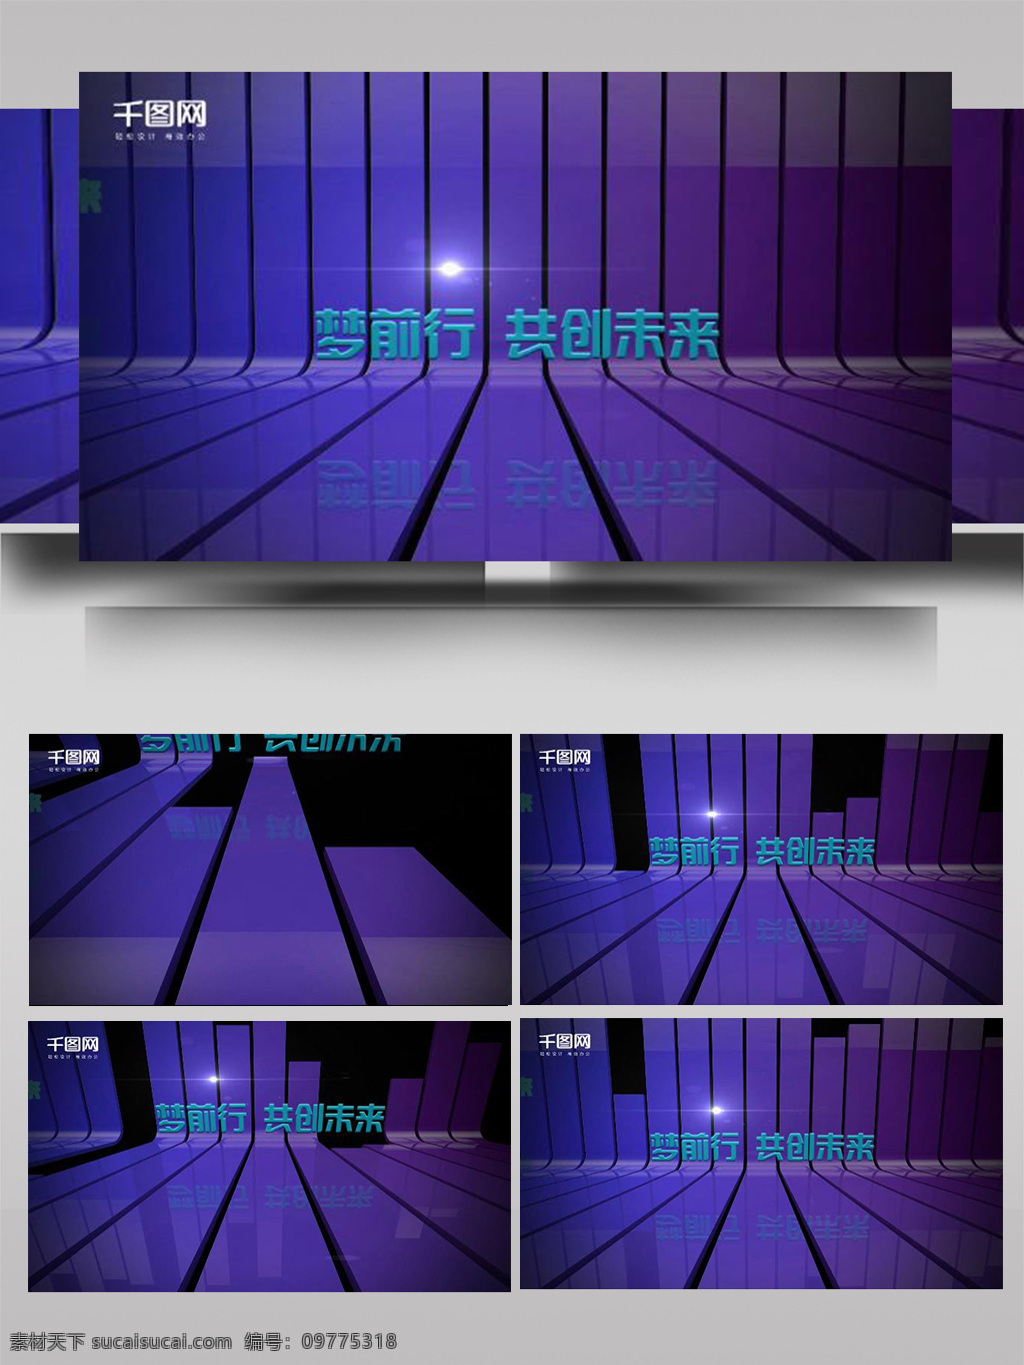 紫色 立体 字 旋转 变换 ae 模板 彩色 大气 文字 散开 组合 光影 动态 动画 展示 片头 转场 过度 荧光色